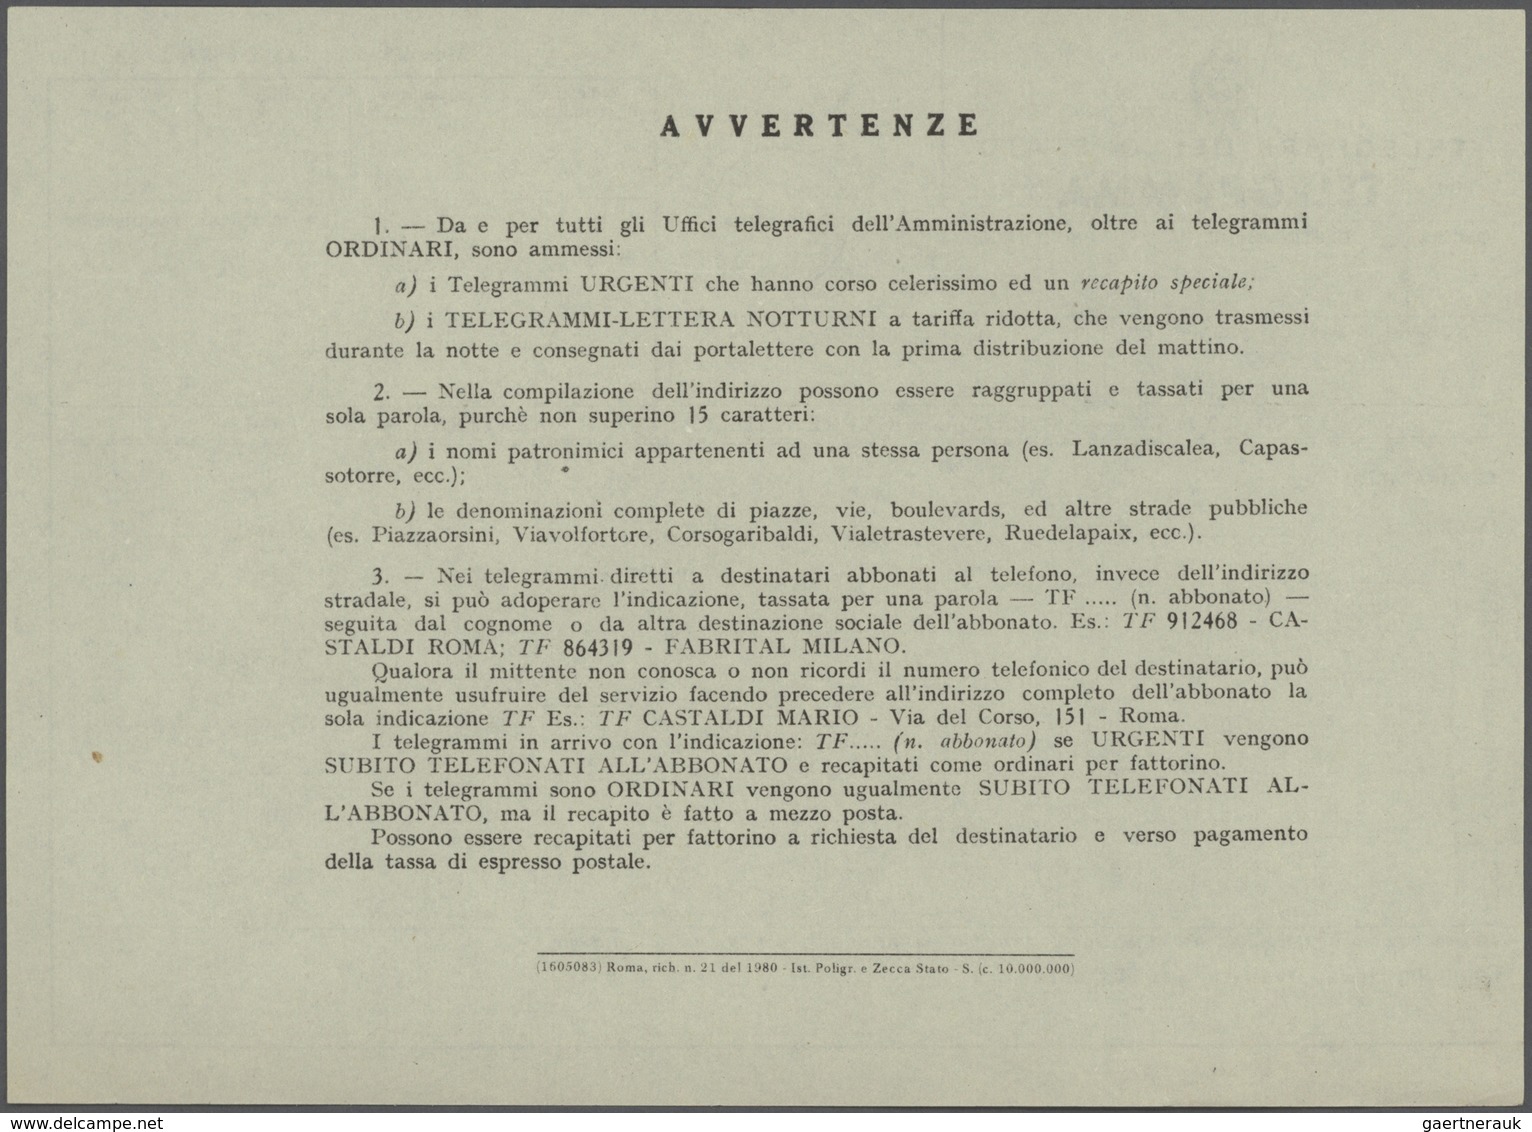 Italien: 1862/1980 (ca.), Telegrafie, Sammlung mit rund 40 Belegen, ab Formular für die Aufgabe eine